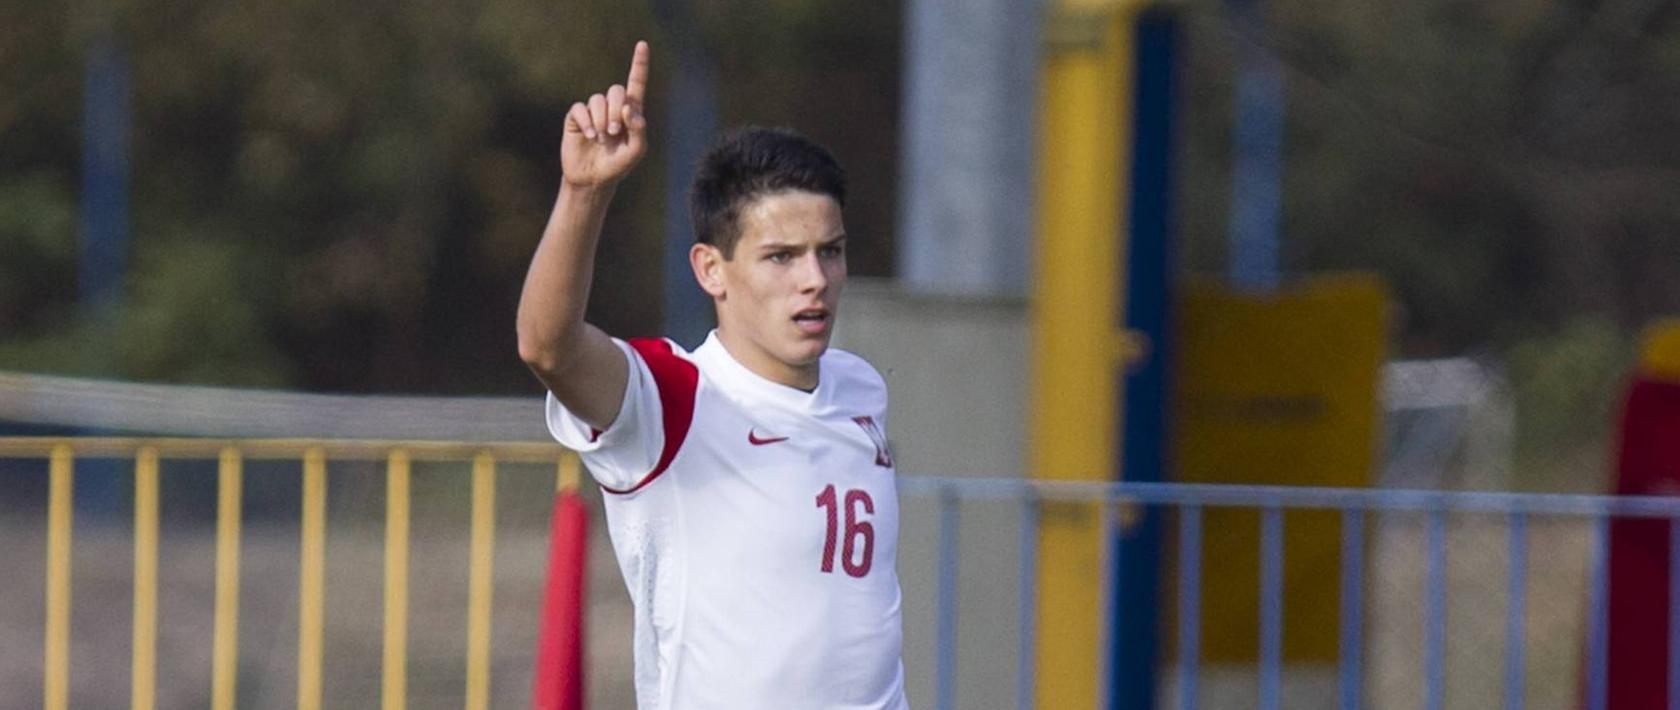 Nach Medienberichten trägt der 17-jährige Mariusz Stepinski ab der kommenden Saison das Trikot des 1. FC Nürnberg.